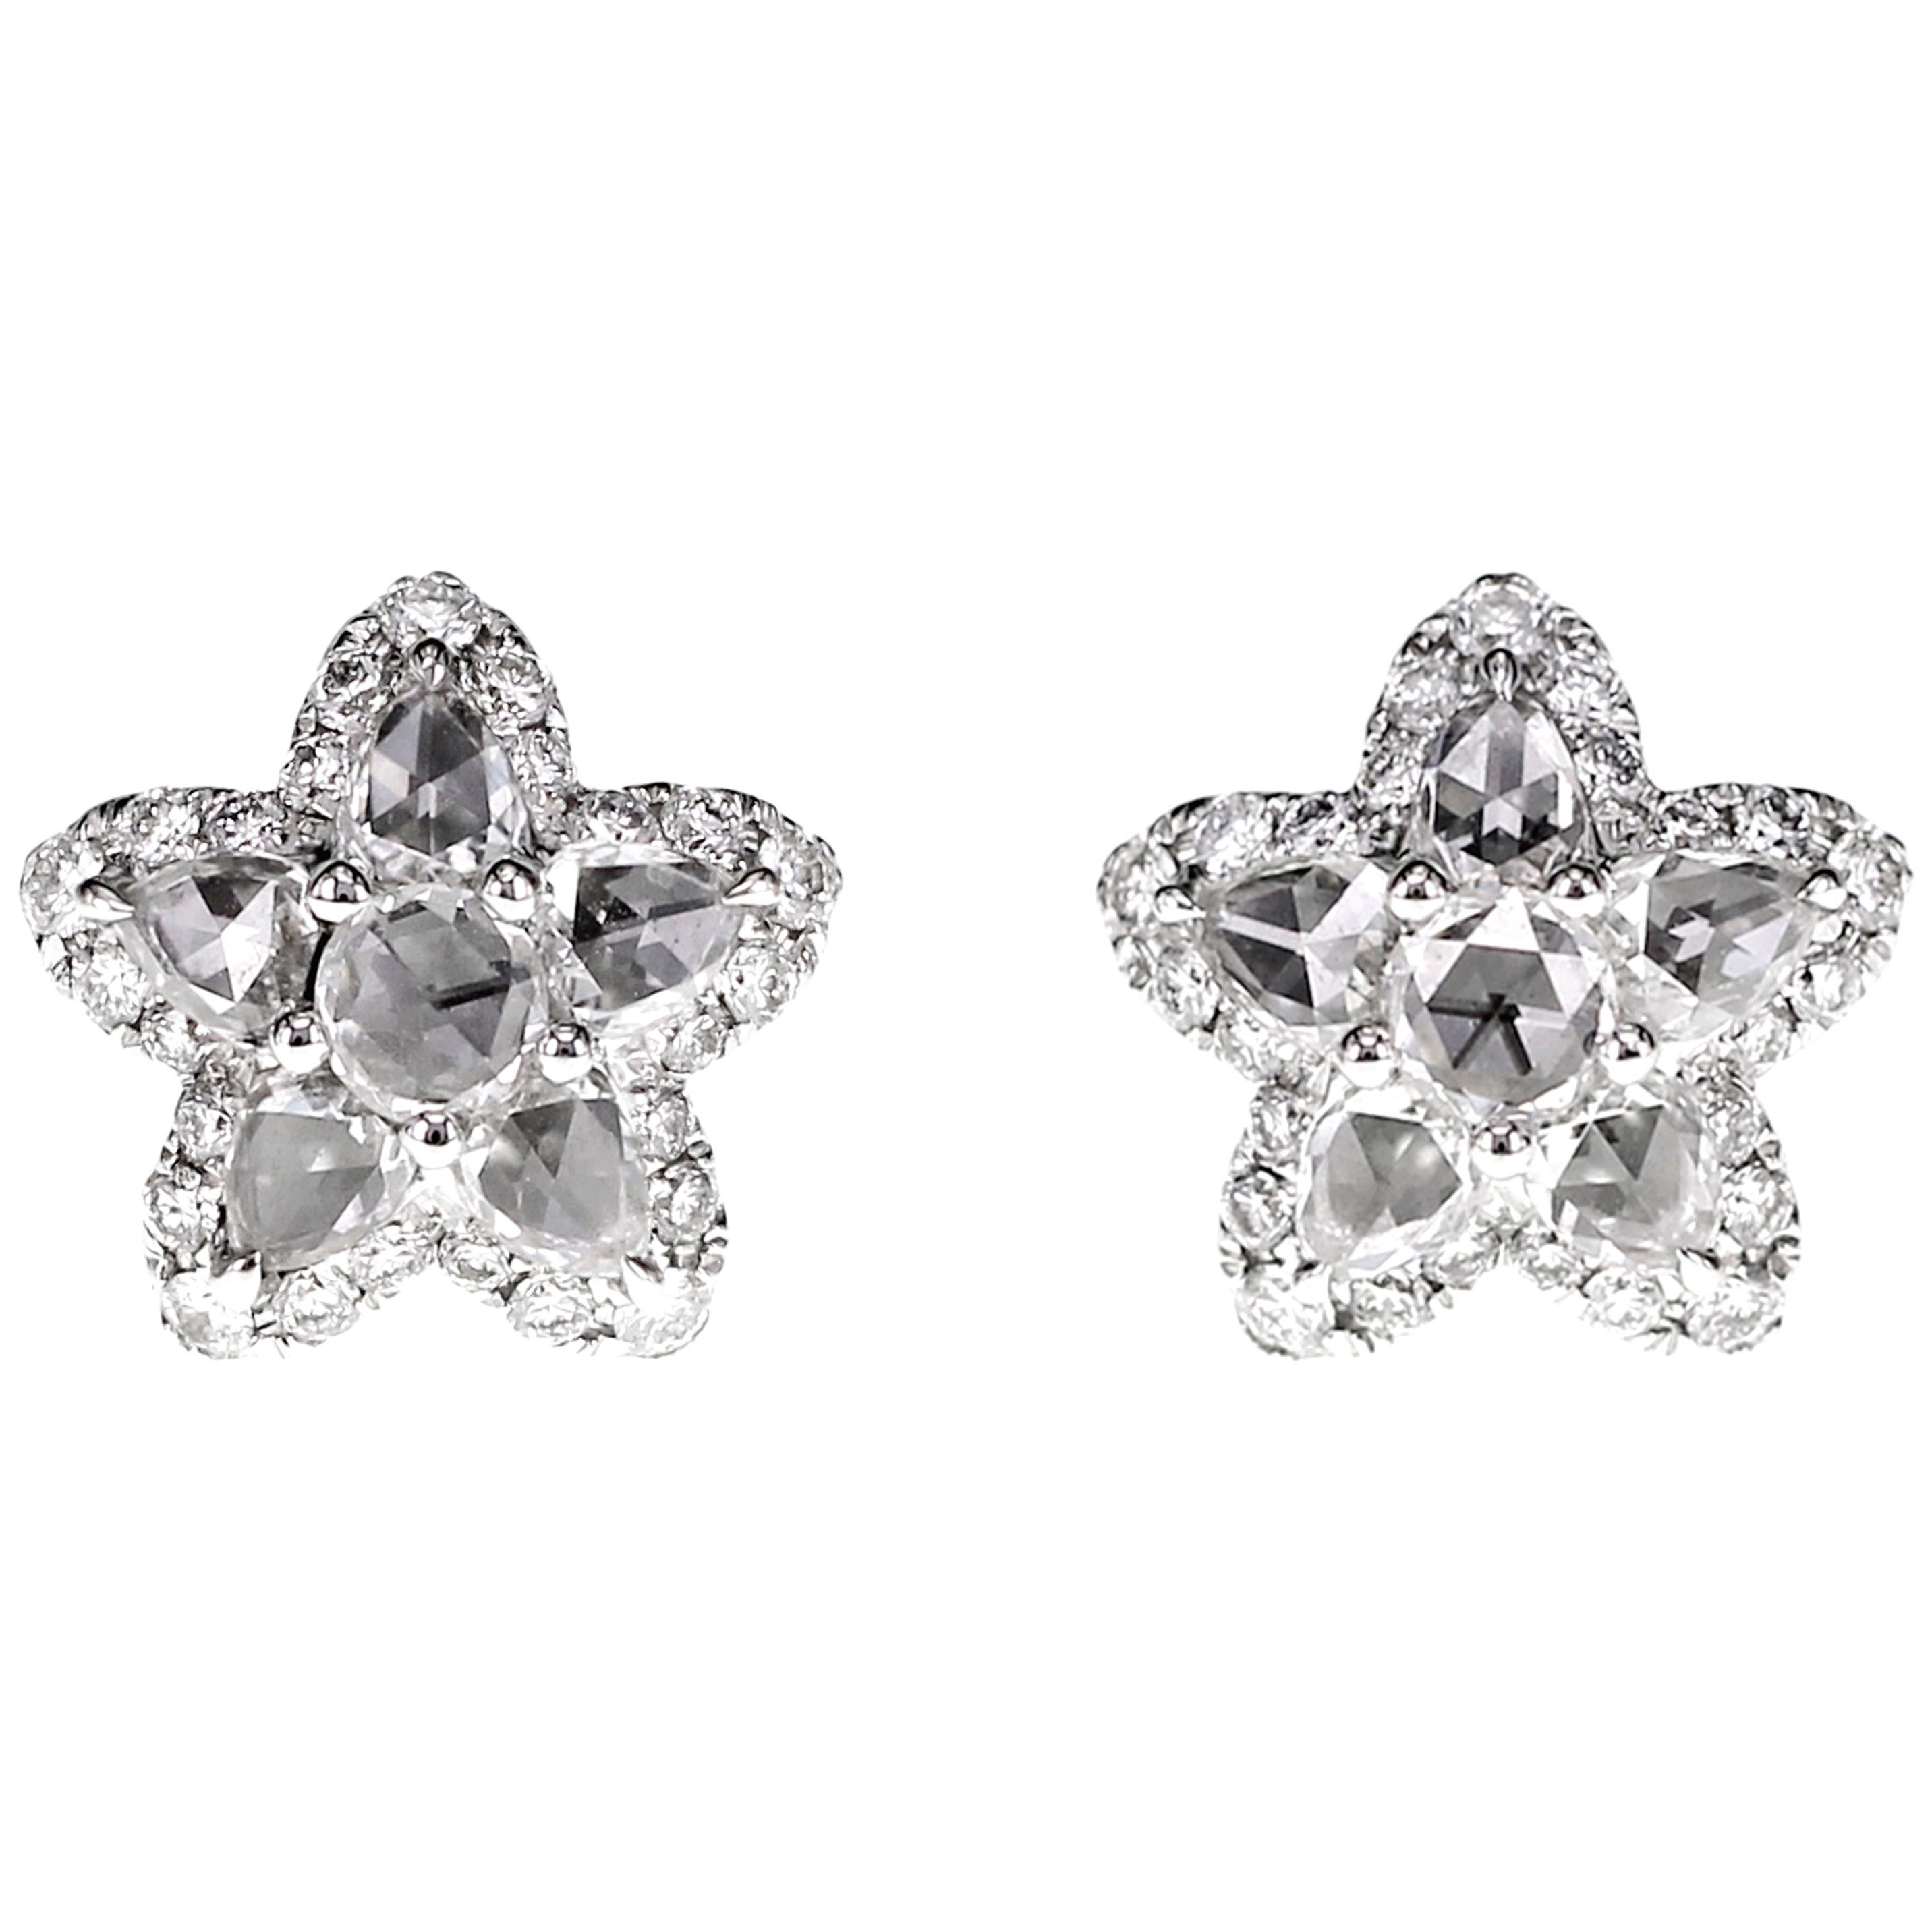 Boucles d'oreilles en forme de poisson étoilé serties d'un diamant blanc de 3,10 carats